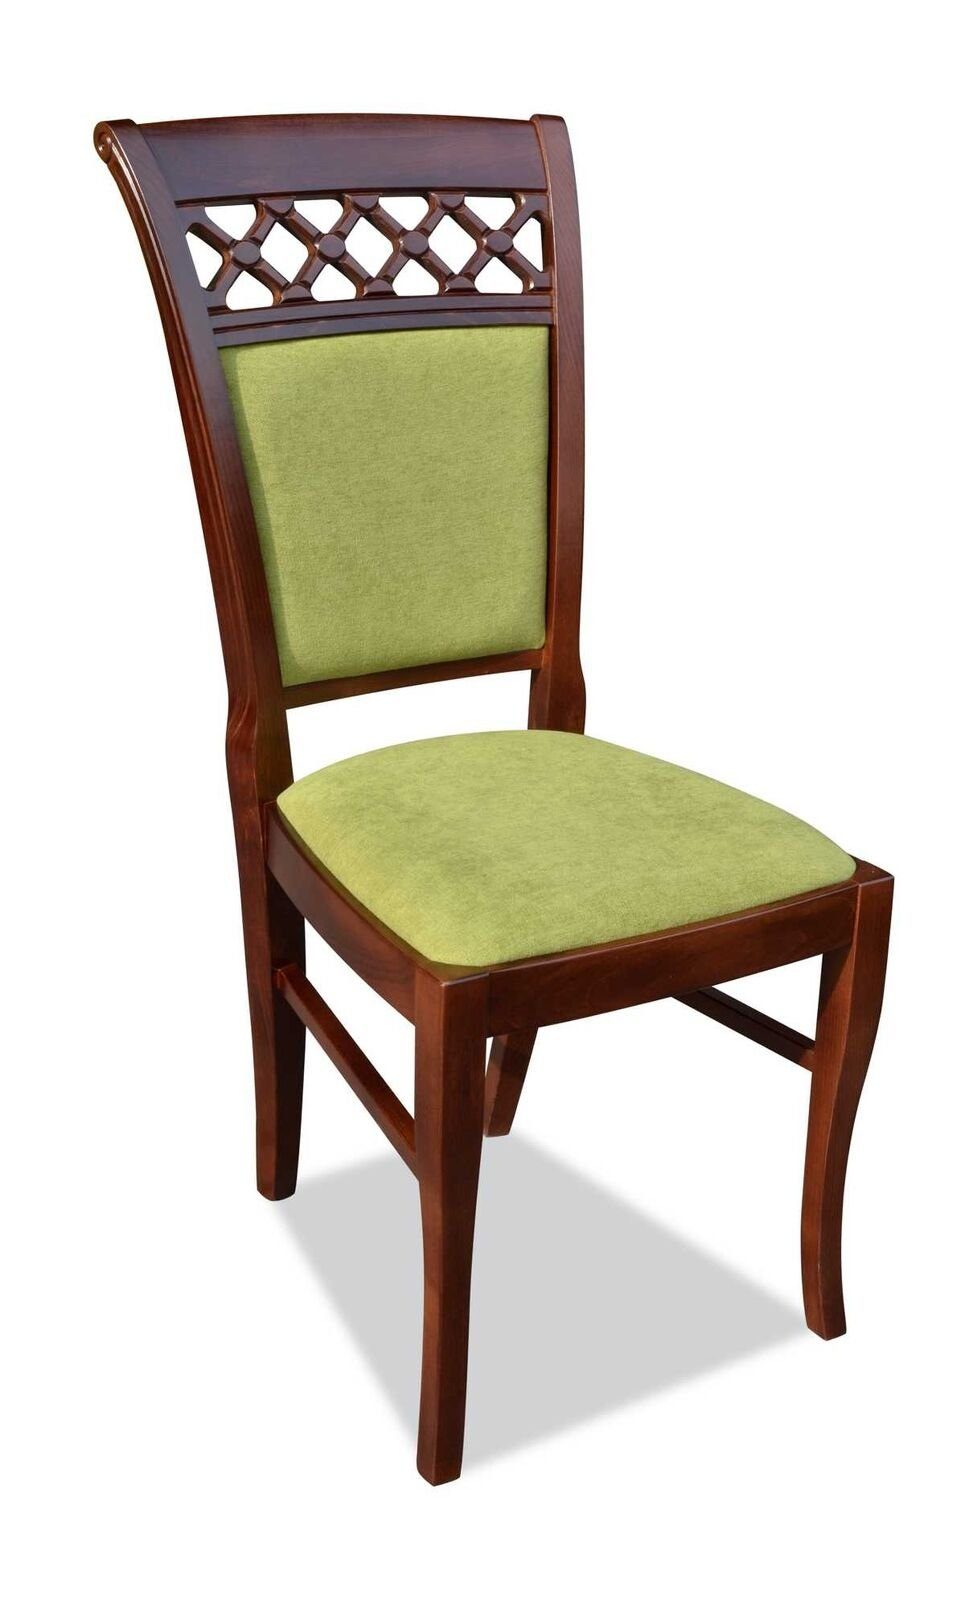 Luxus Braun/Grun Neu Wohnzimmer Stuhl Esszimmer JVmoebel Sessel Stuhl Polsterstuhl Armlehne (1 St) ohne